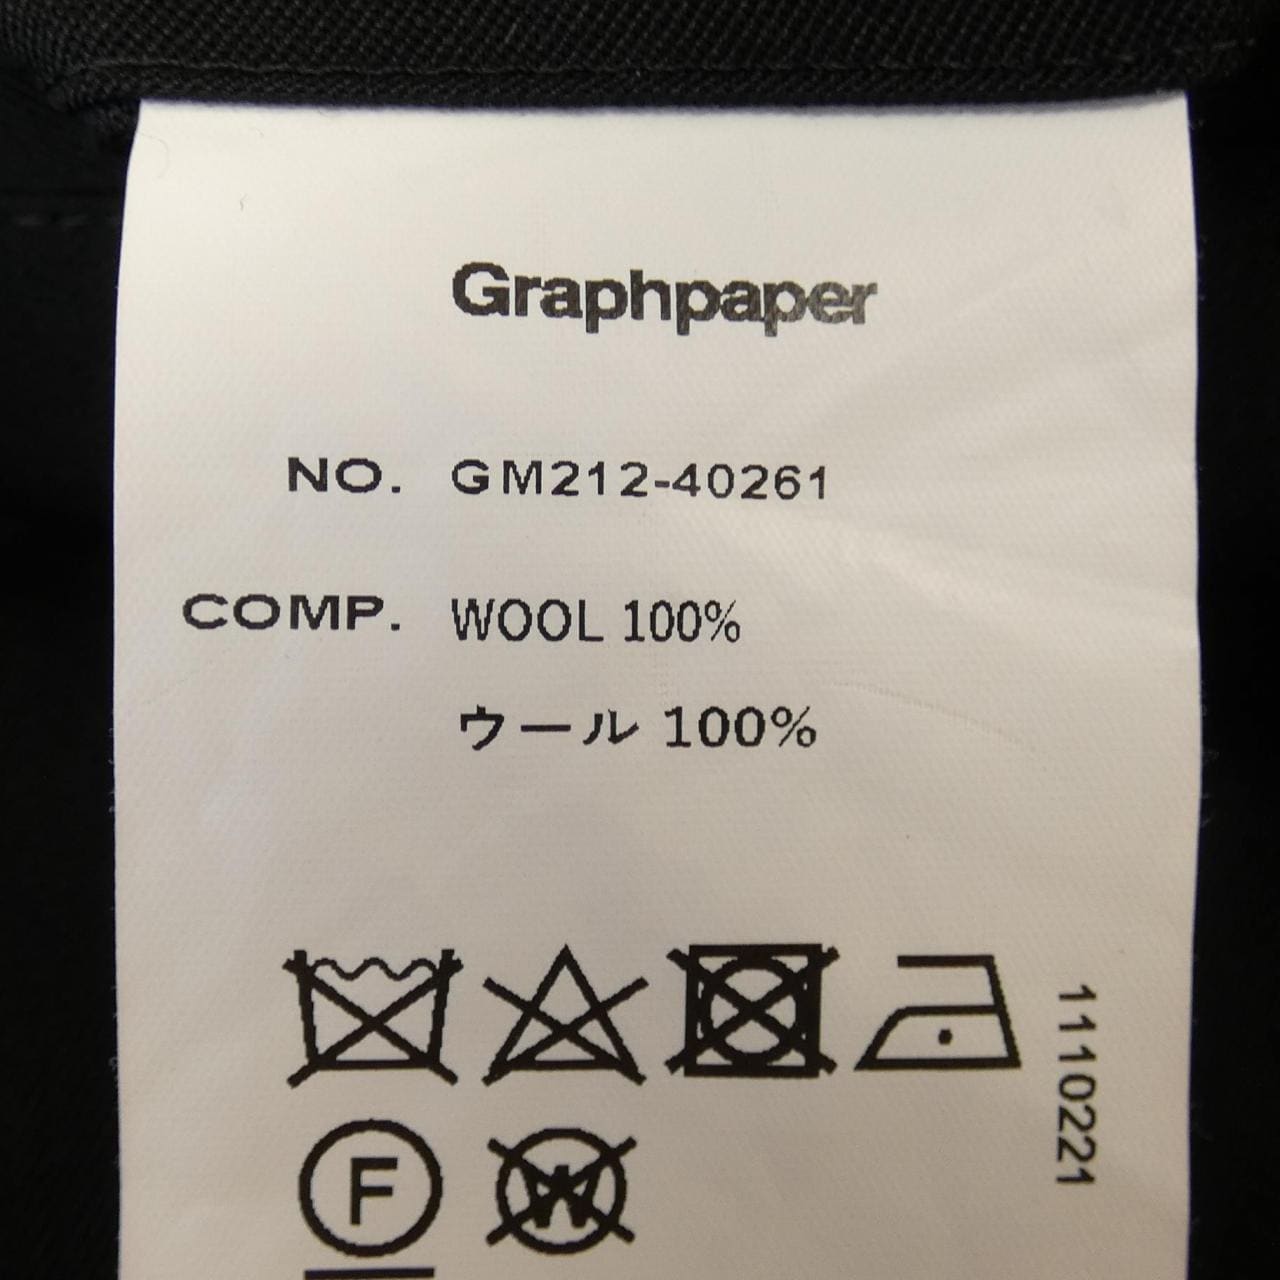 图表纸Graphpaper短裤